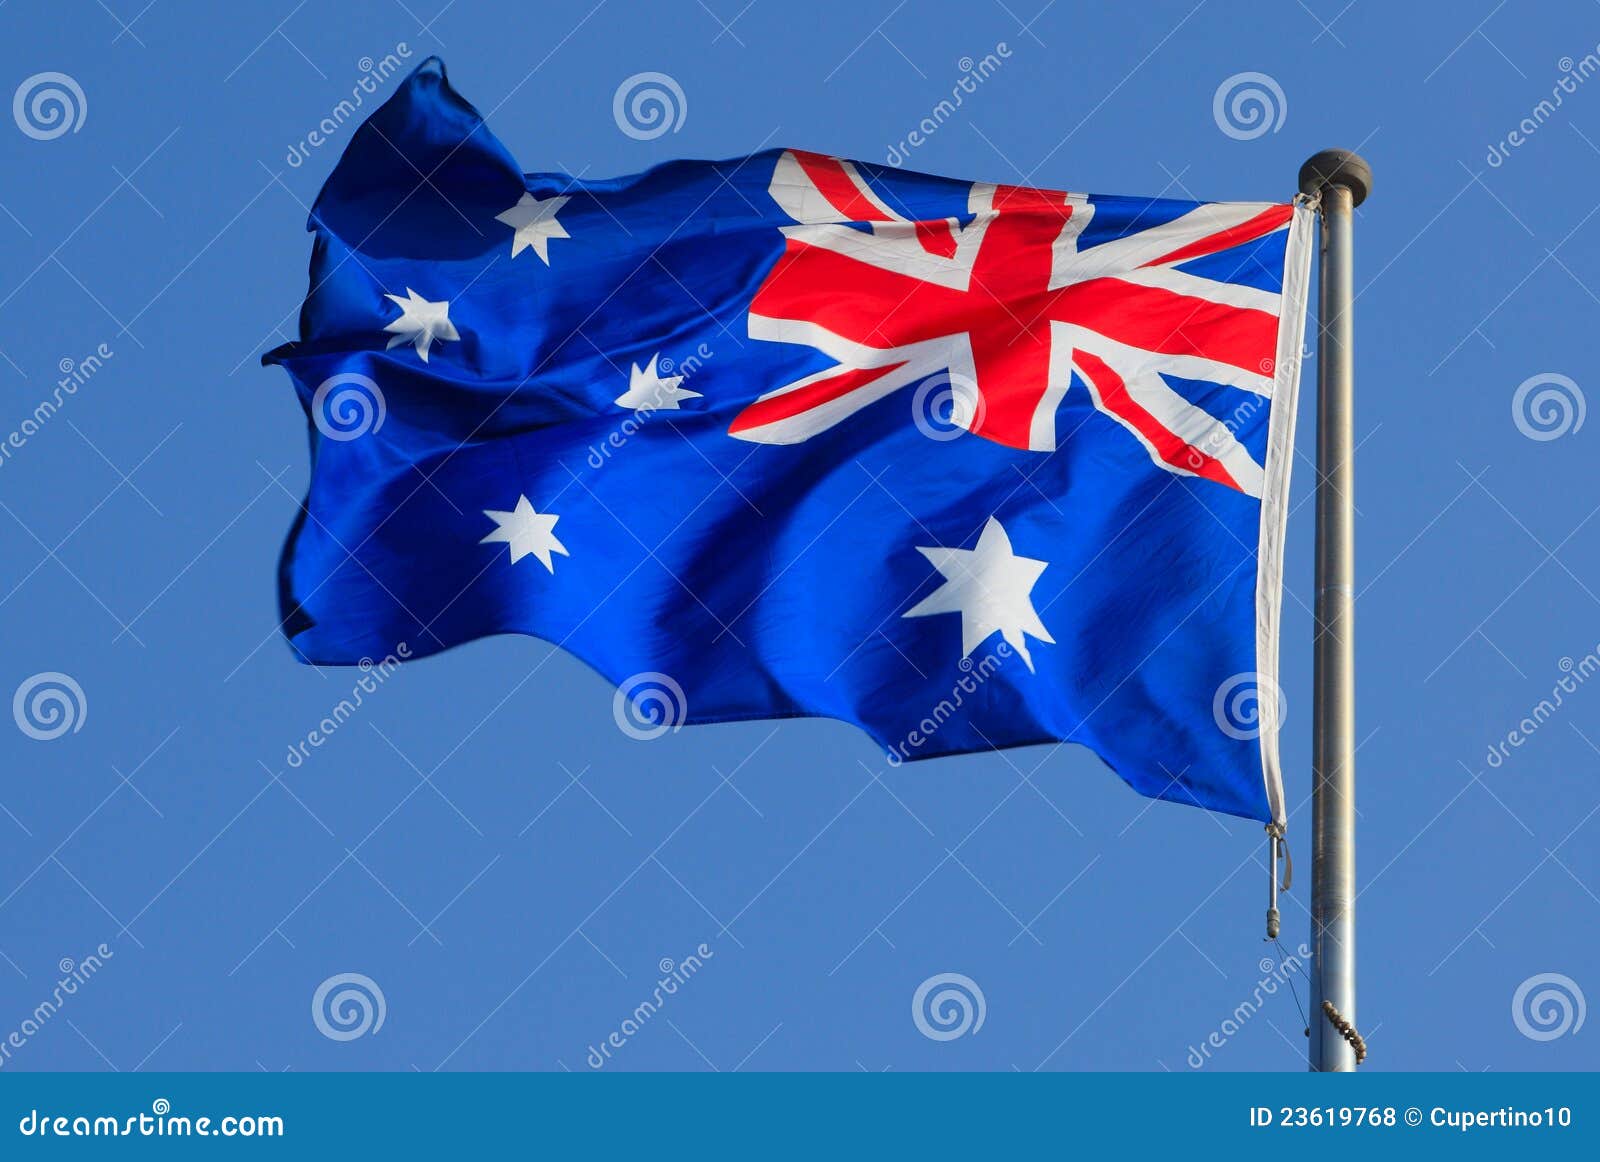 new zealand flag vs australian flag